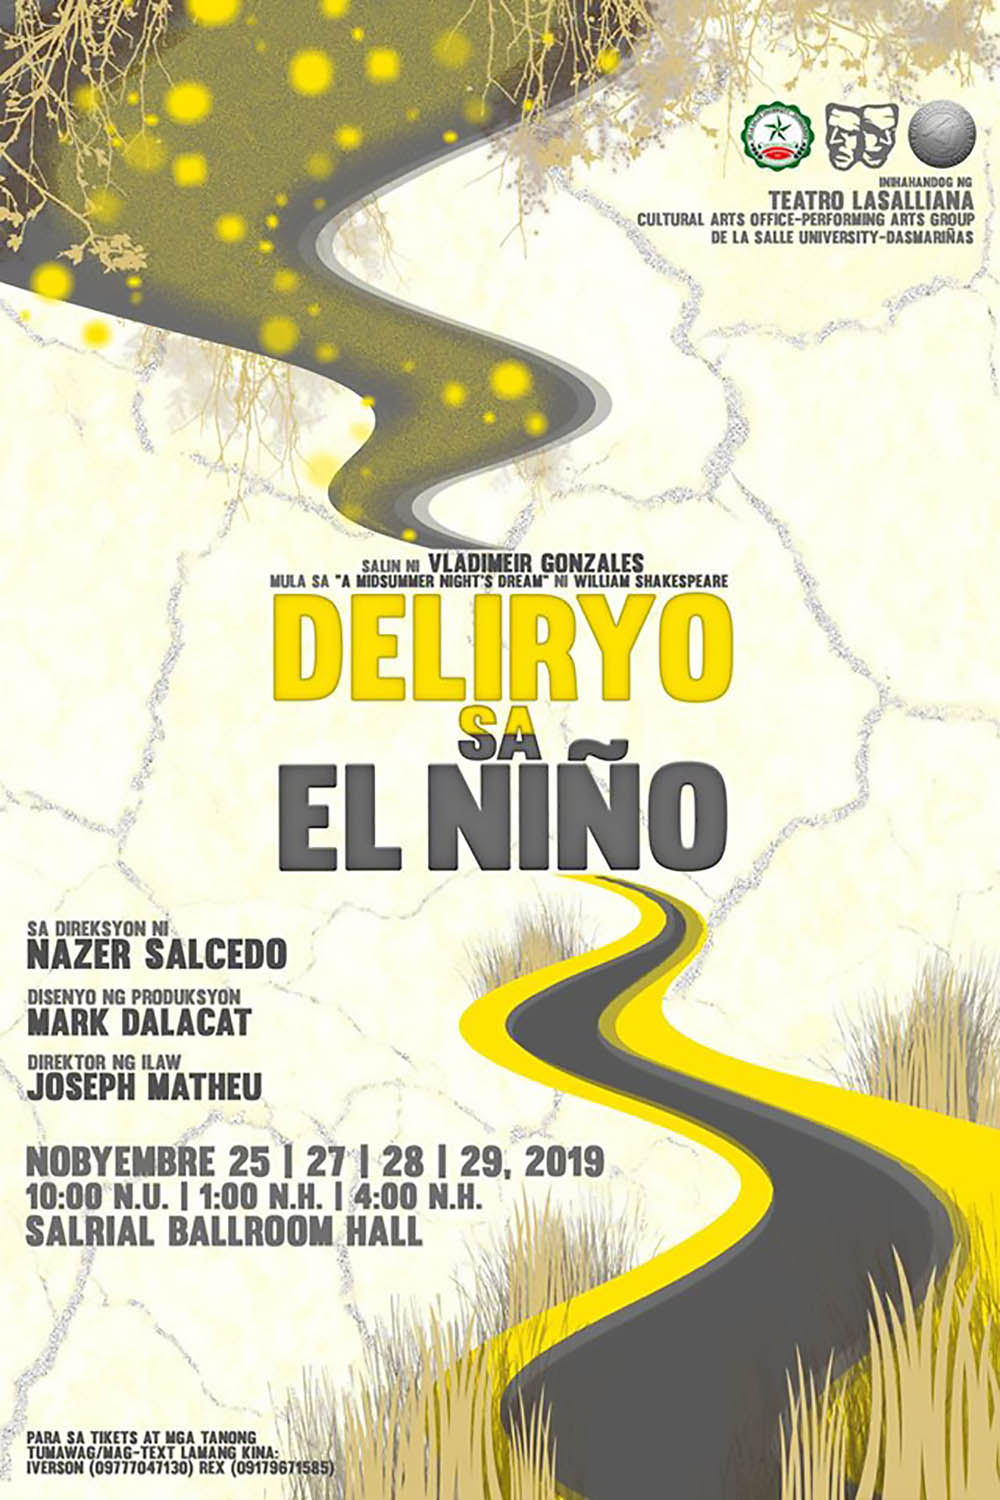 Deliryo sa El Niño this November